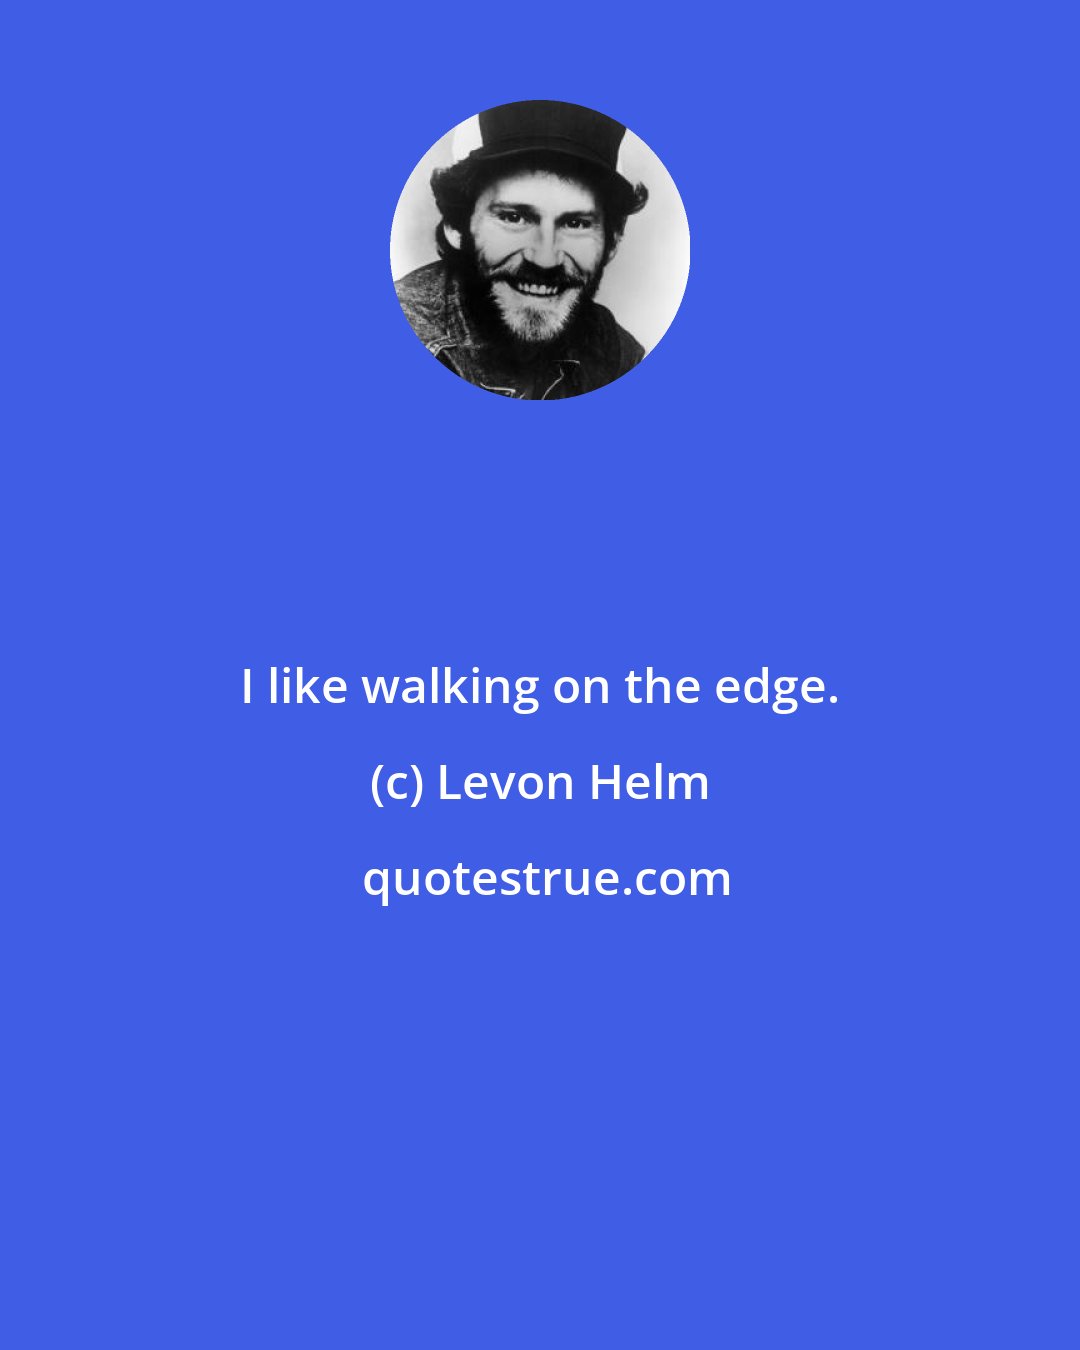 Levon Helm: I like walking on the edge.